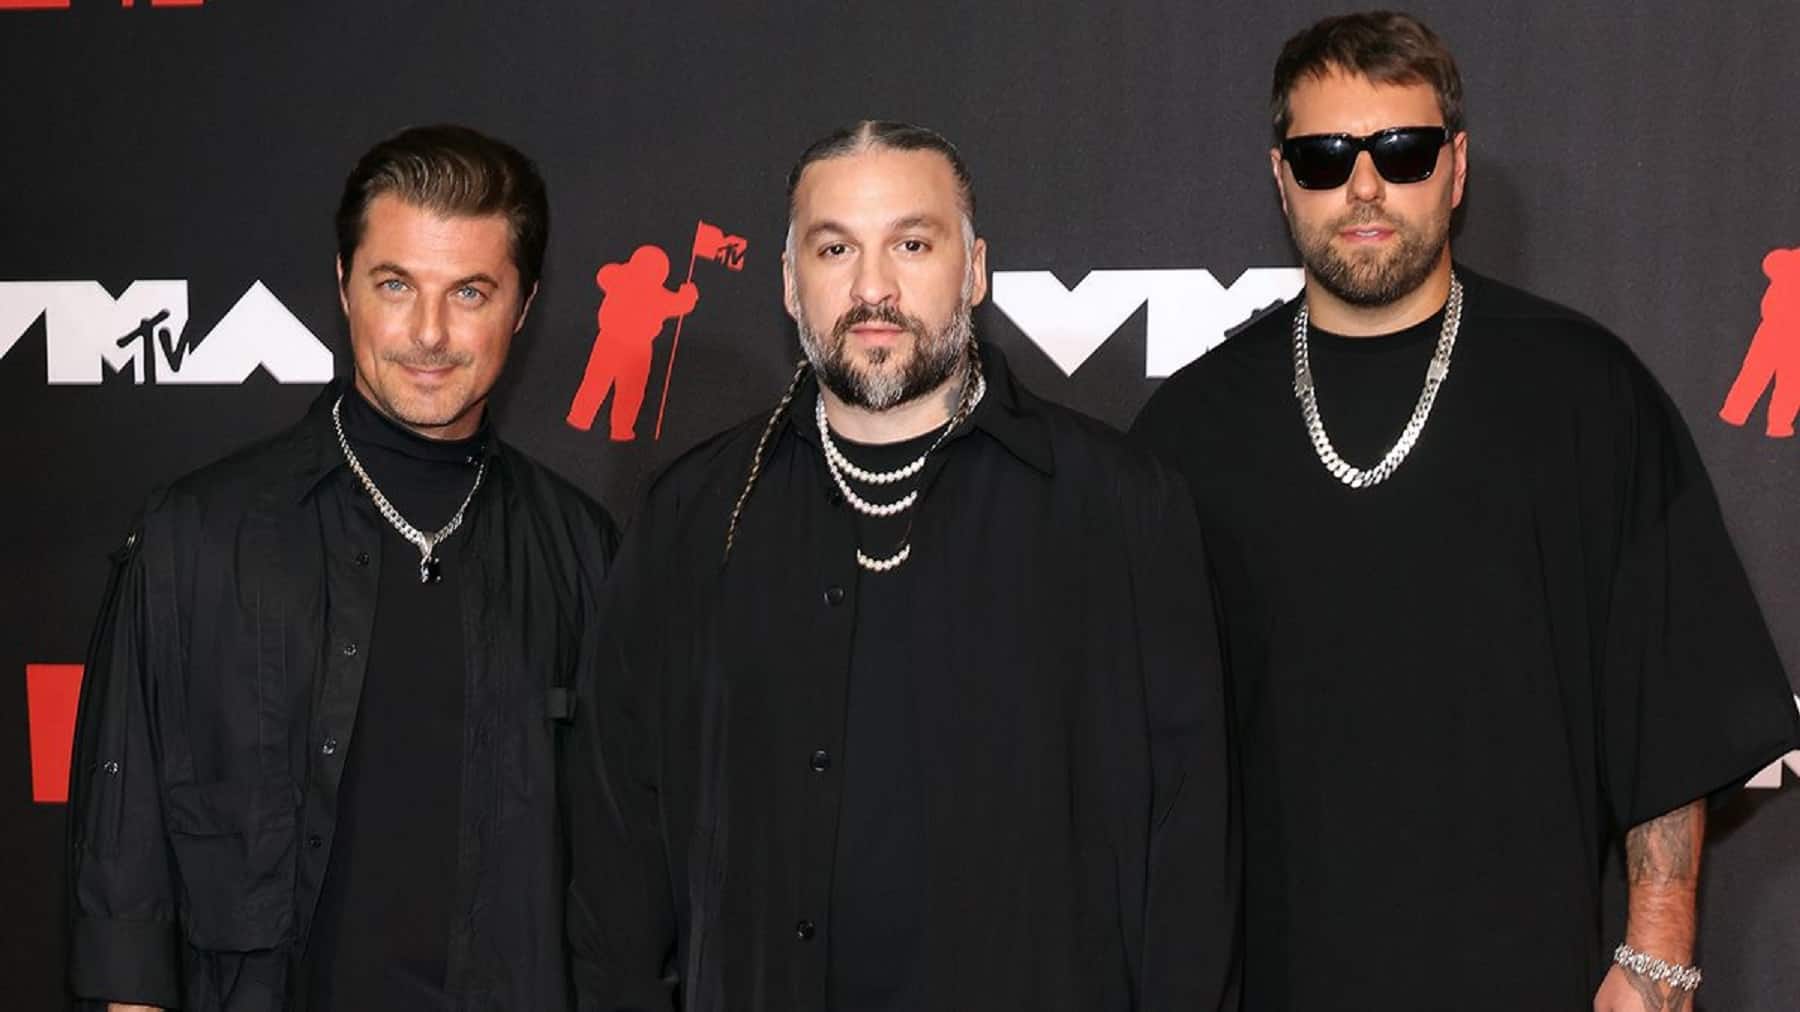 Swedish House Mafia named in Pandora Papers leak